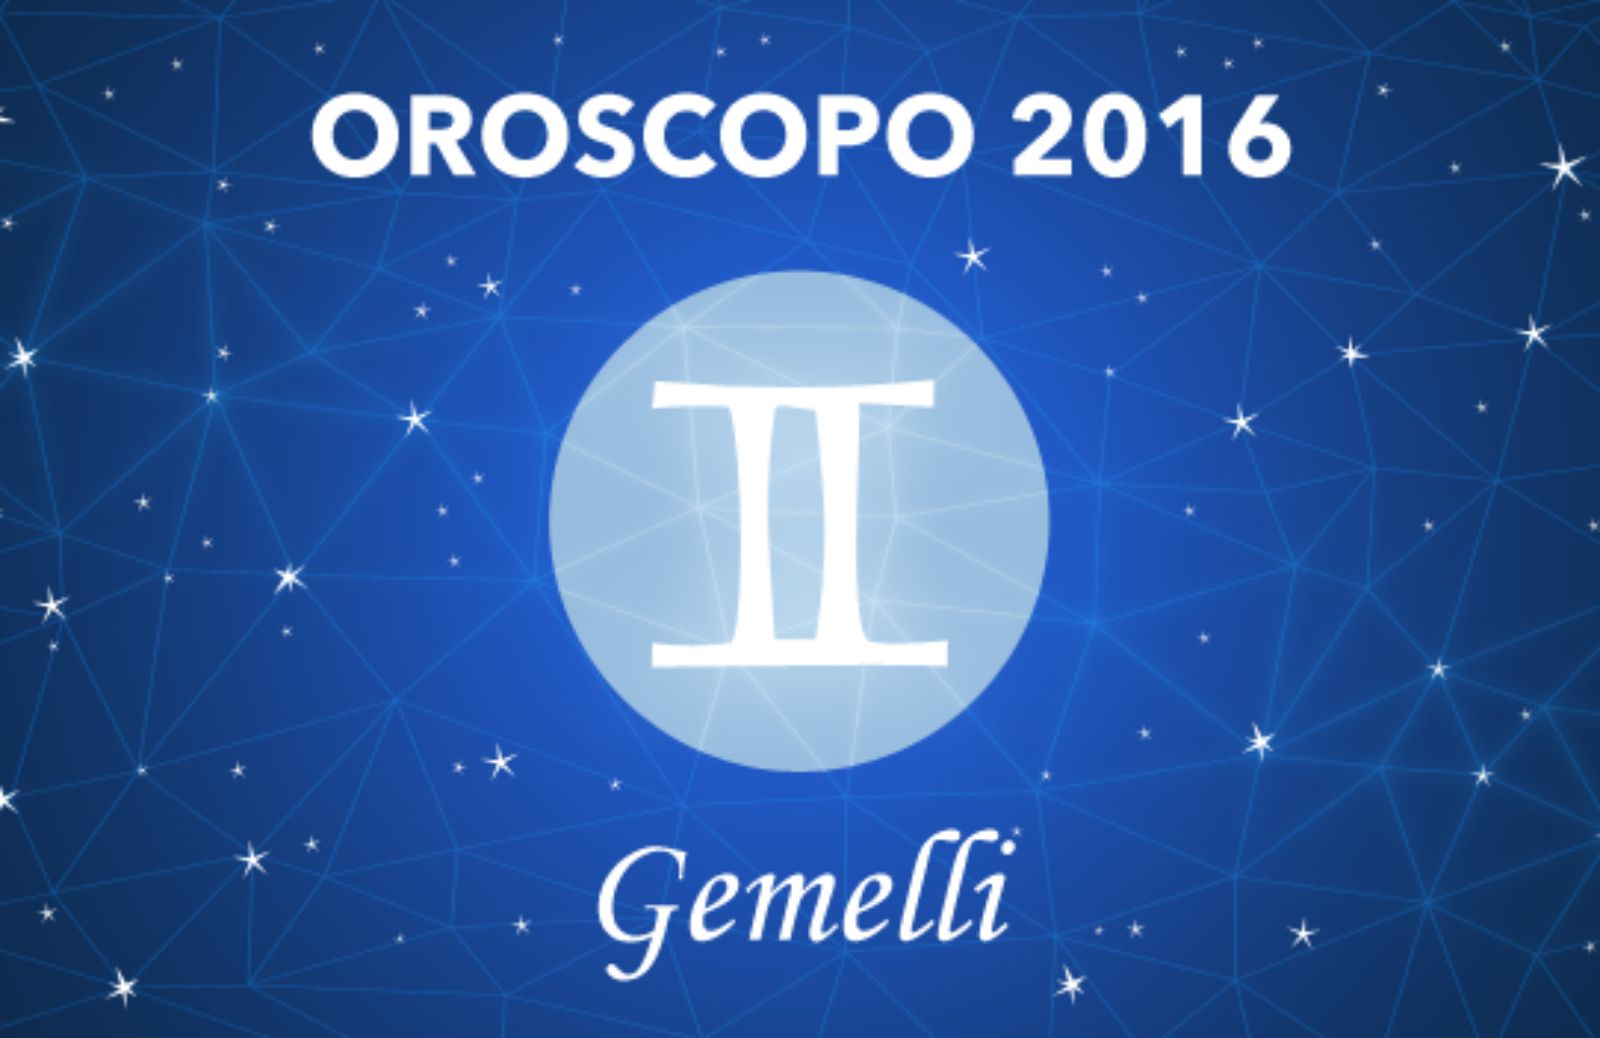 Oroscopo 2016 - Gemelli